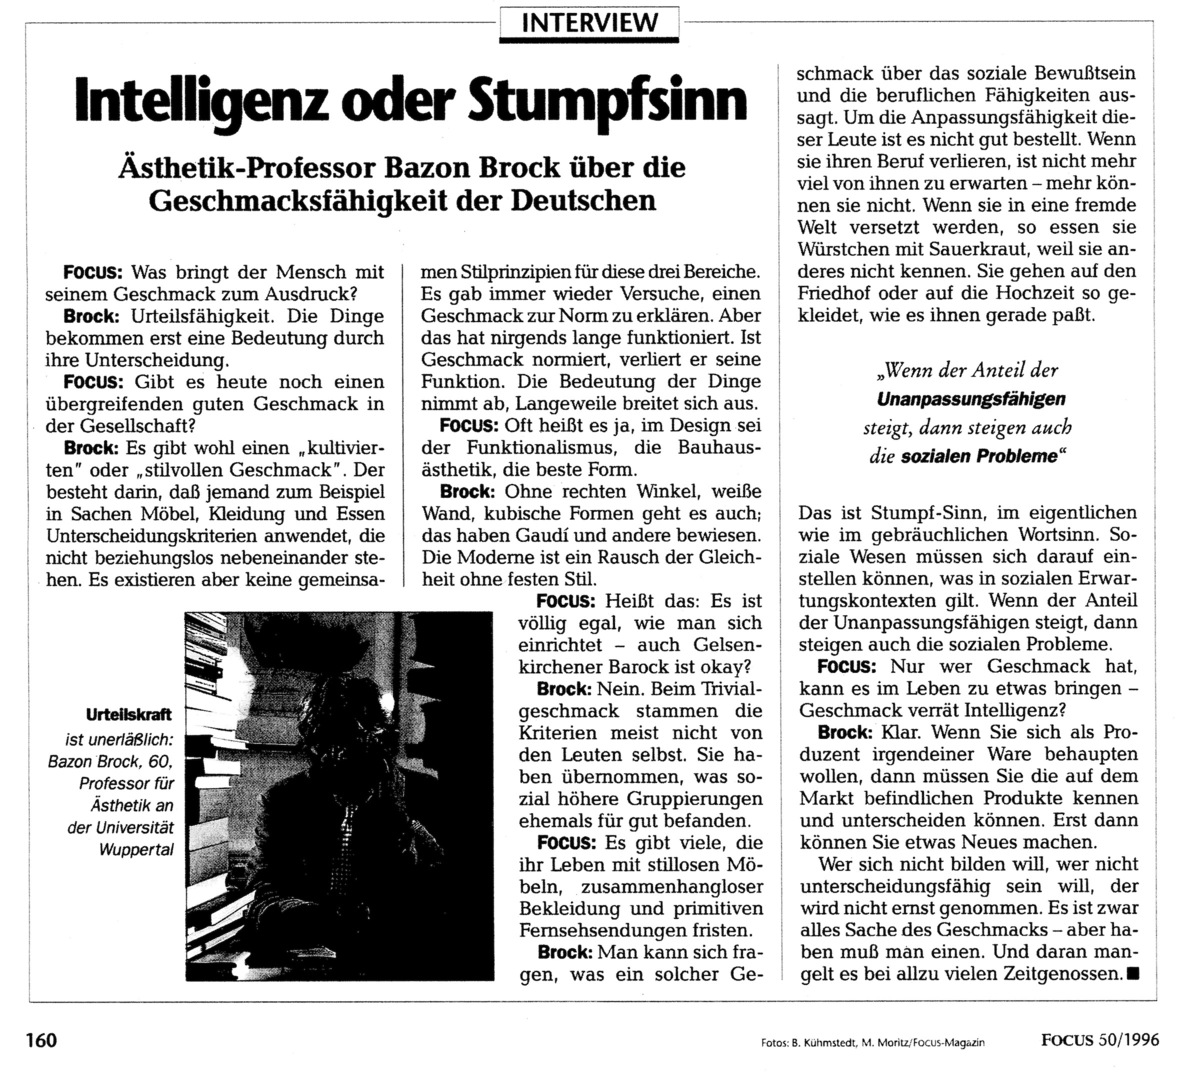 Interview „Intelligenz oder Stumpfsinn“. Ästhetikprofessor Bazon Brock über die Geschmacksfähigkeit der Deutschen, Bild: Focus, Nr. 50/1996.